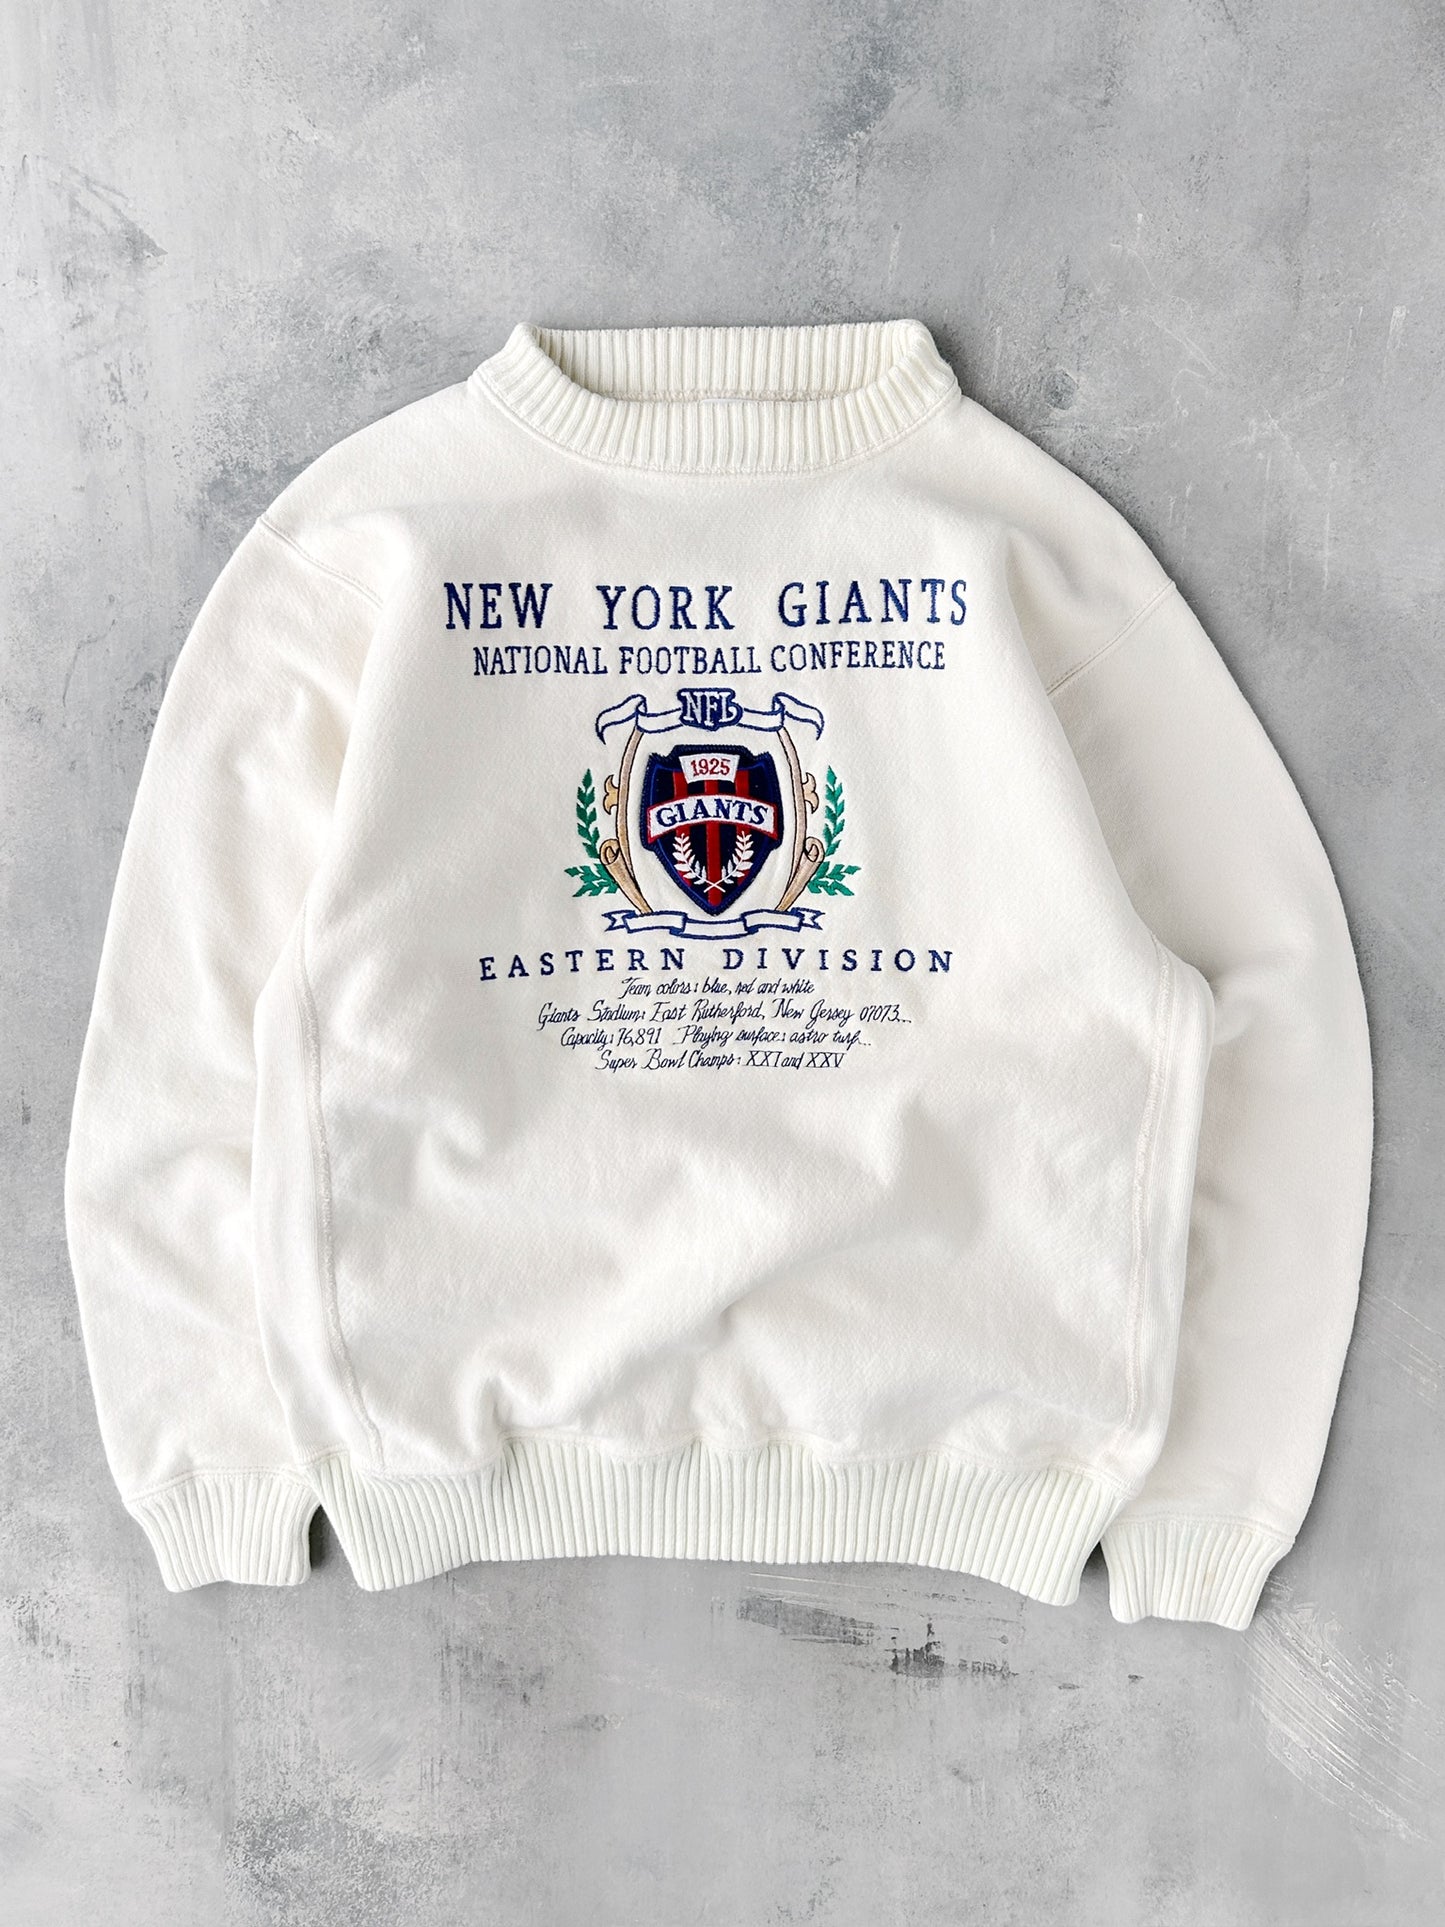 New York Giants Sweatshirt 90's - Large